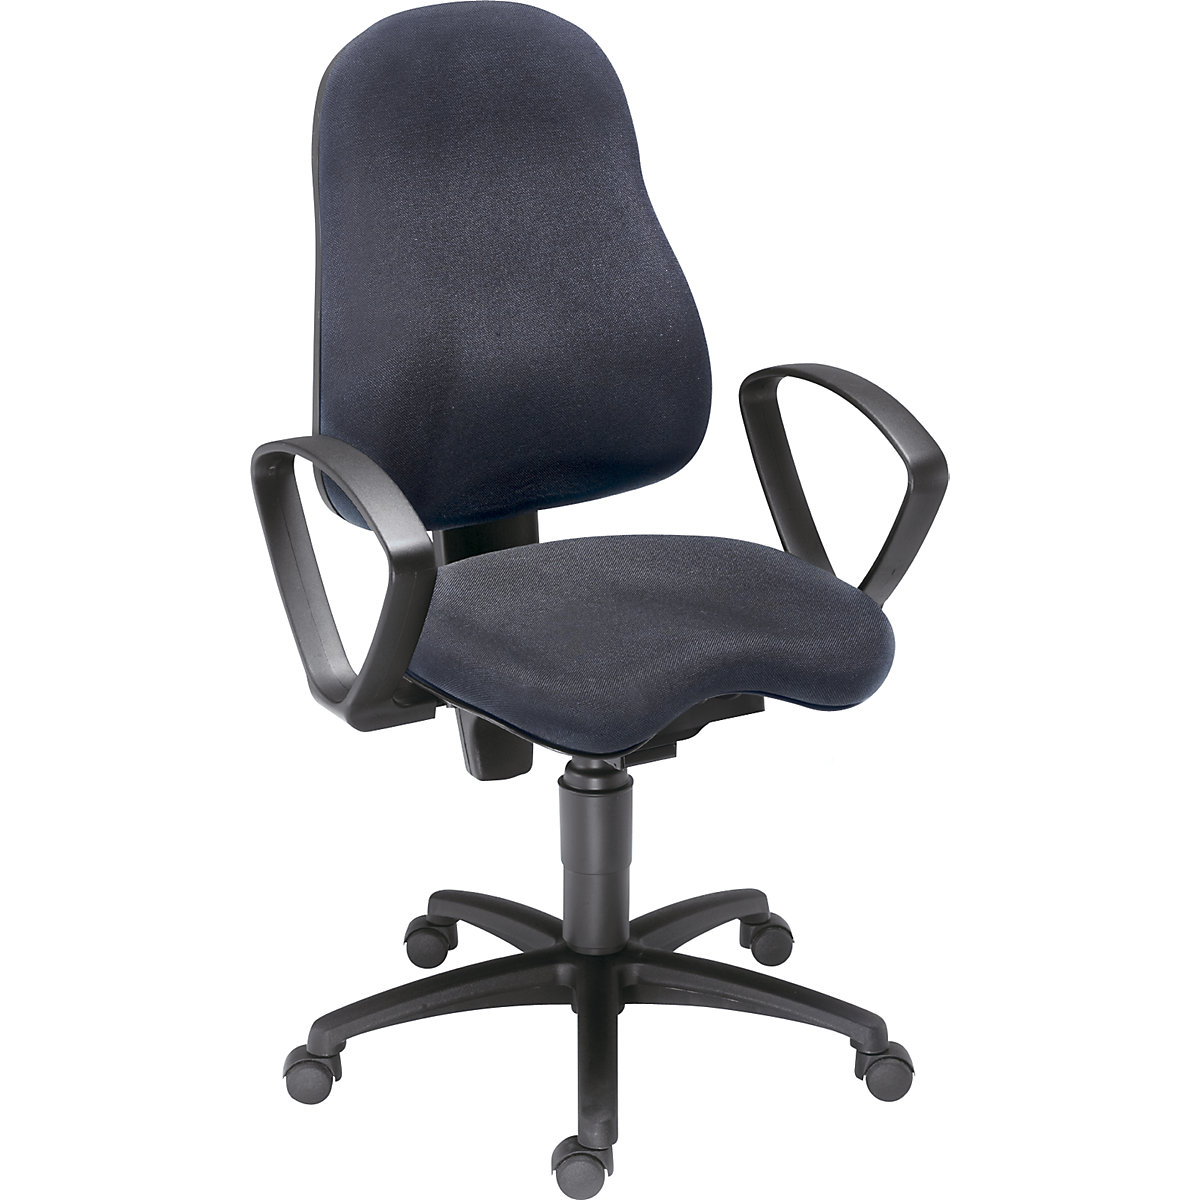 Udobna okretna stolica BALANCE 400 – Topstar, sa zglobom sjedala Body Balance Tec® i naslonima za ruke, presvlaka u crnoj boji-4